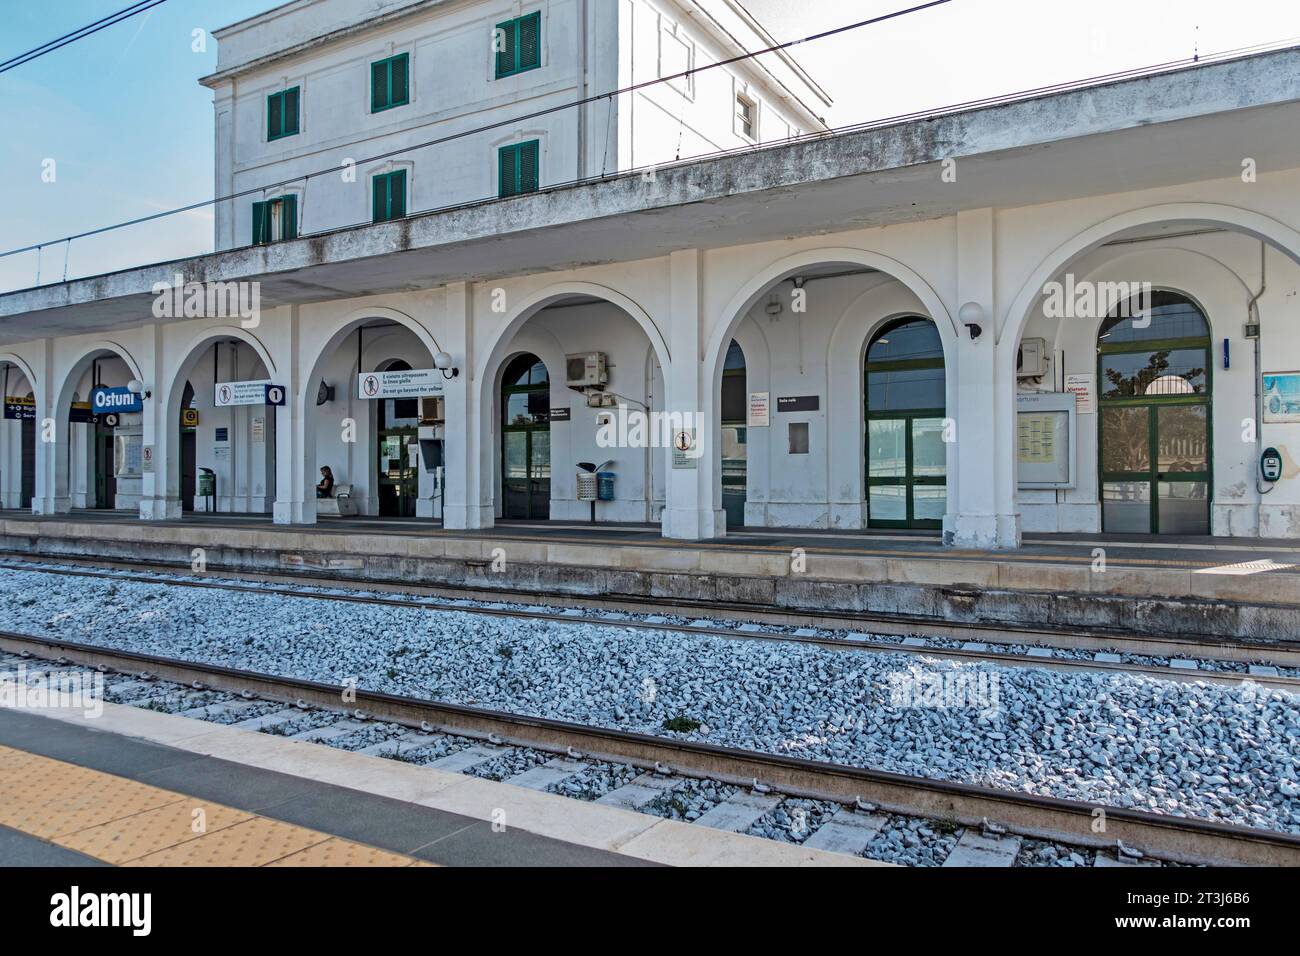 La stazione ferroviaria di Ostuni, Italia. I servizi ferroviari sono gestiti da Trenitalia, il principale operatore ferroviario in Italia. Foto Stock